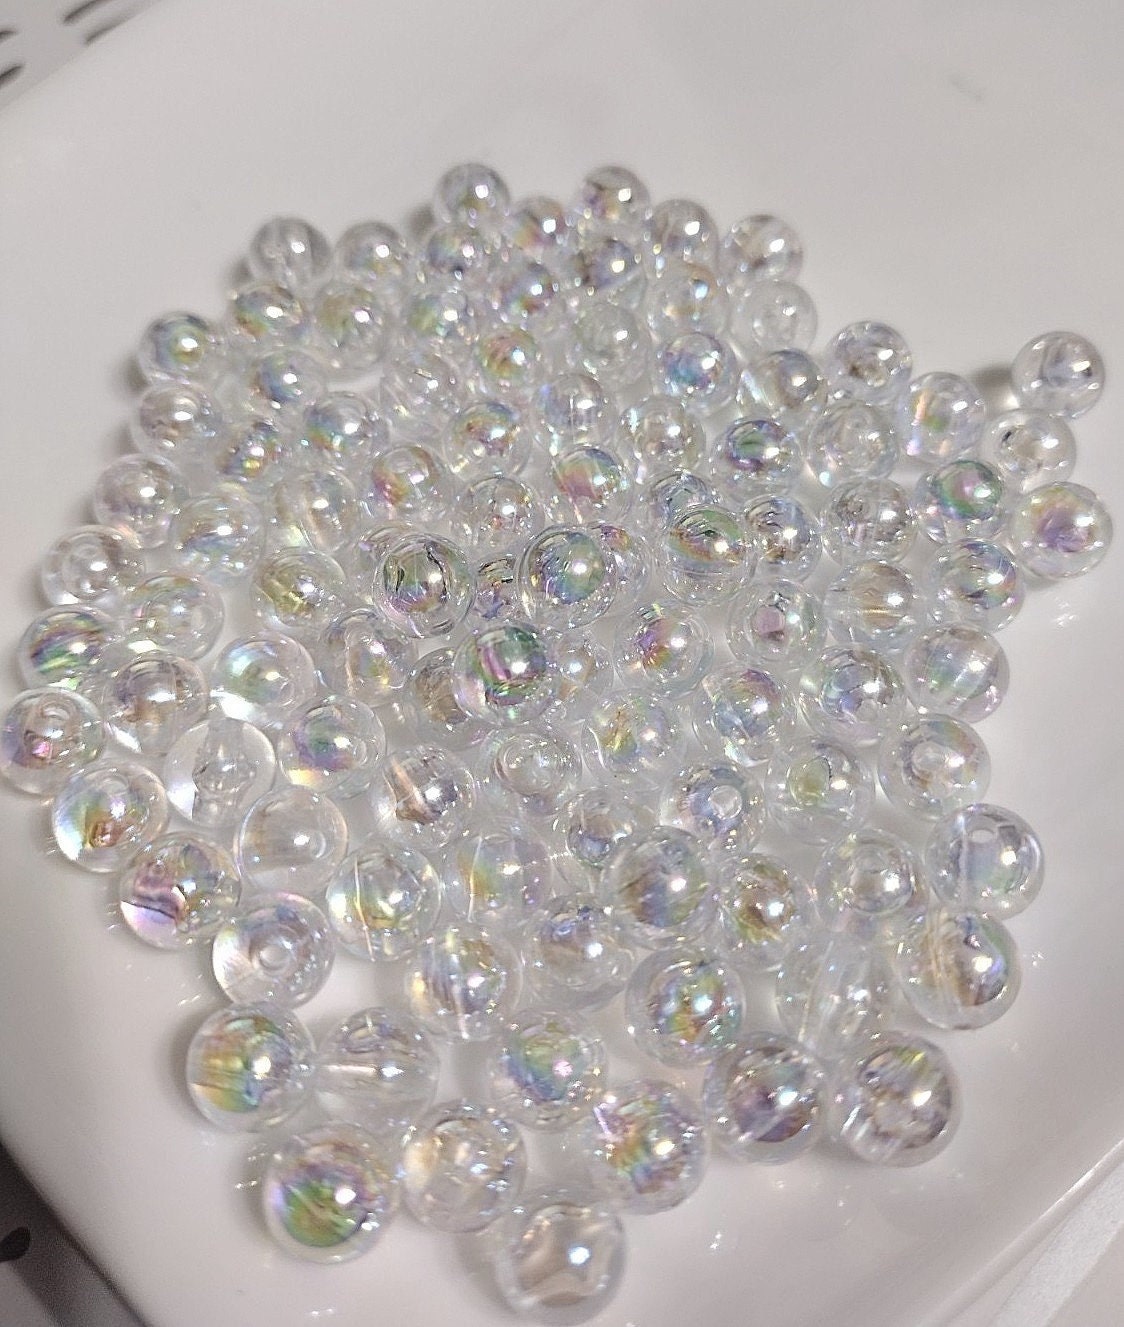 200 gram bulk Iridescent Water Bubble Bead Assortment